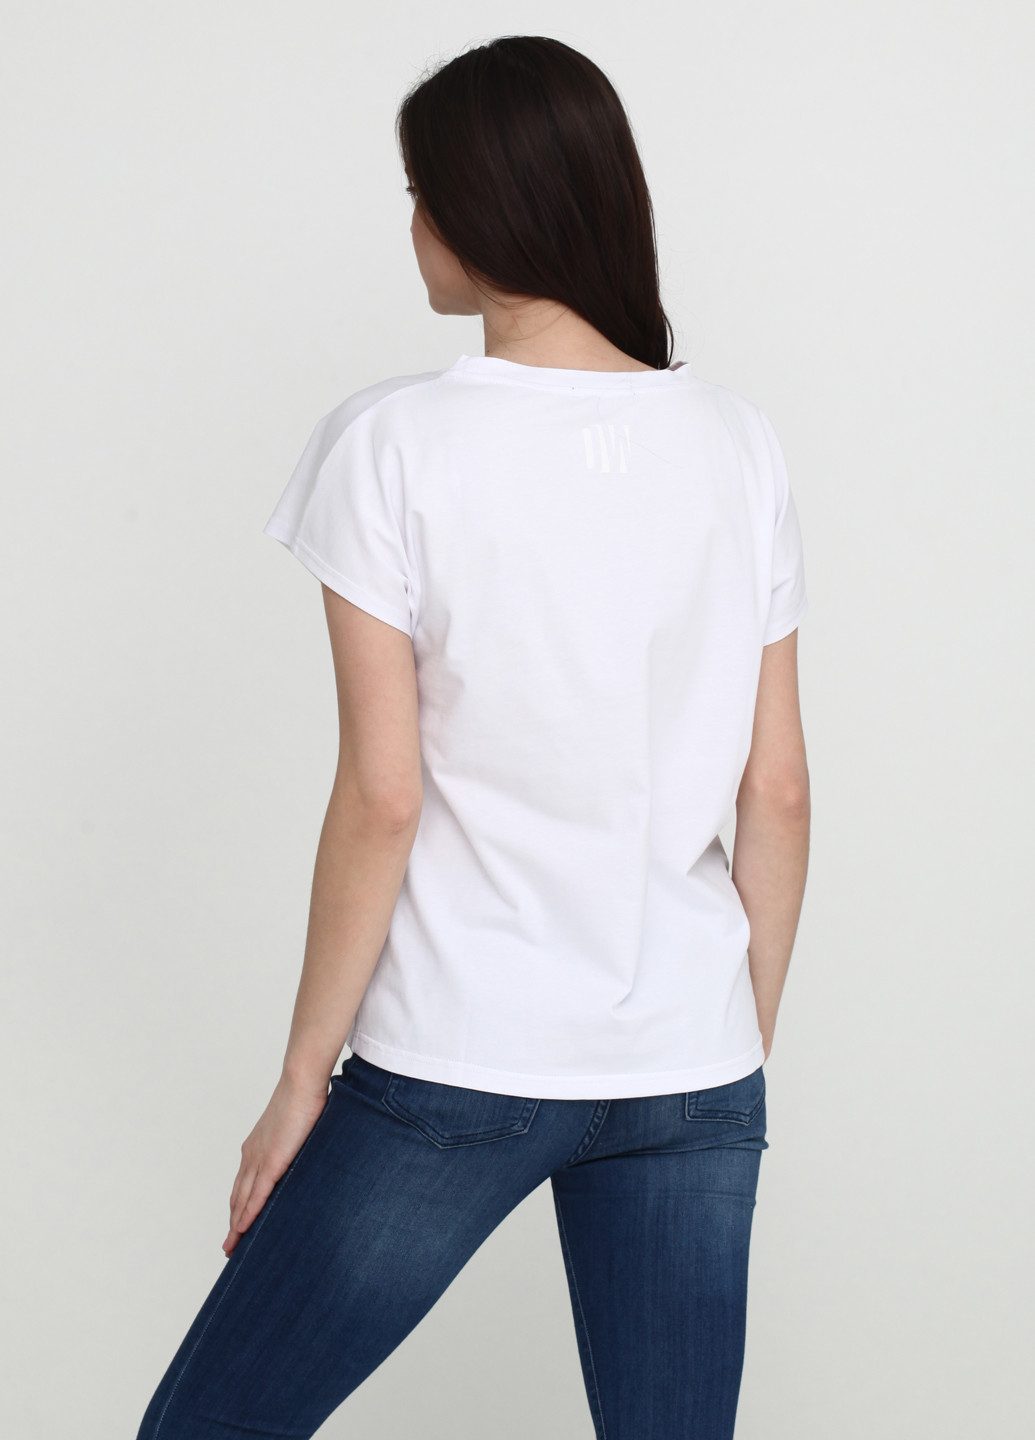 Белая летняя футболка Only Woman